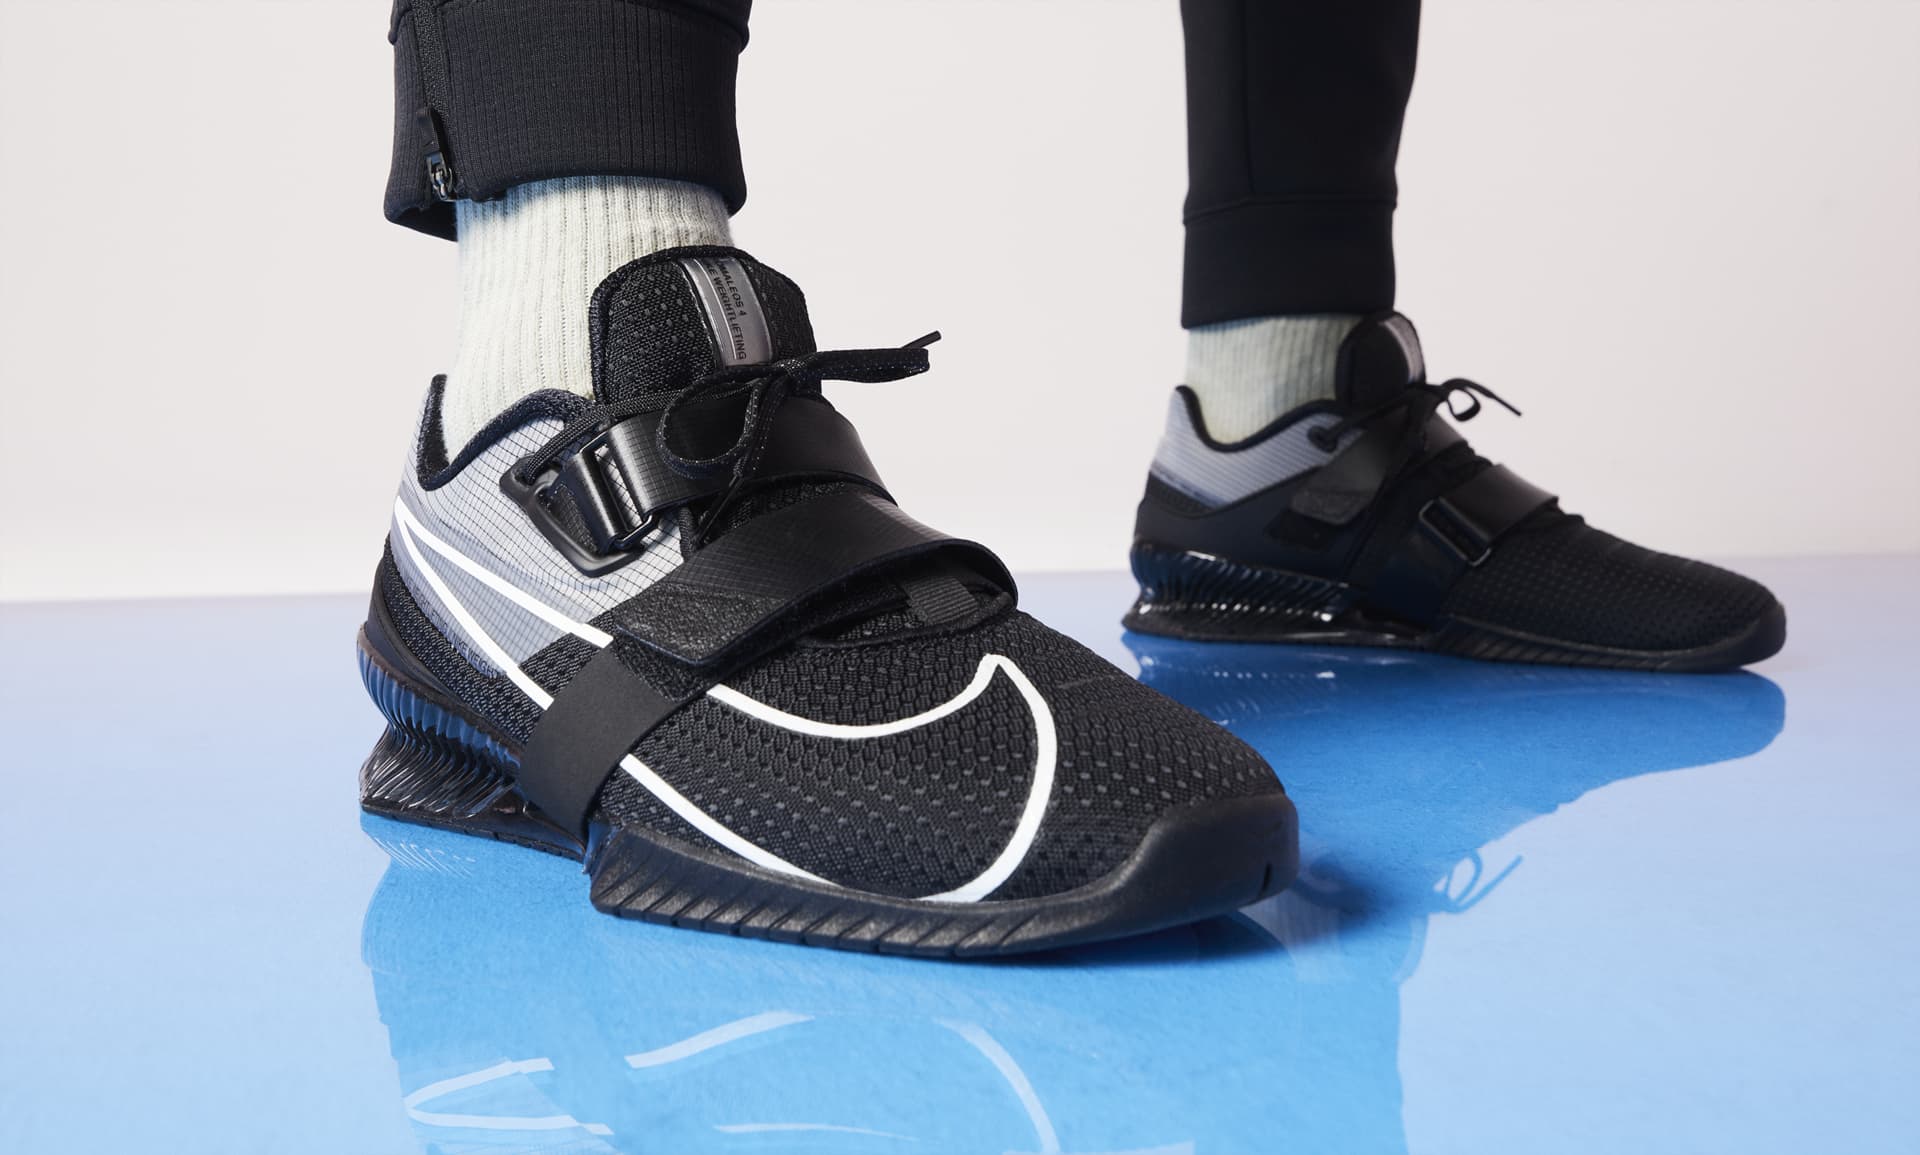 Nike Romaleos 4 Training Shoe.